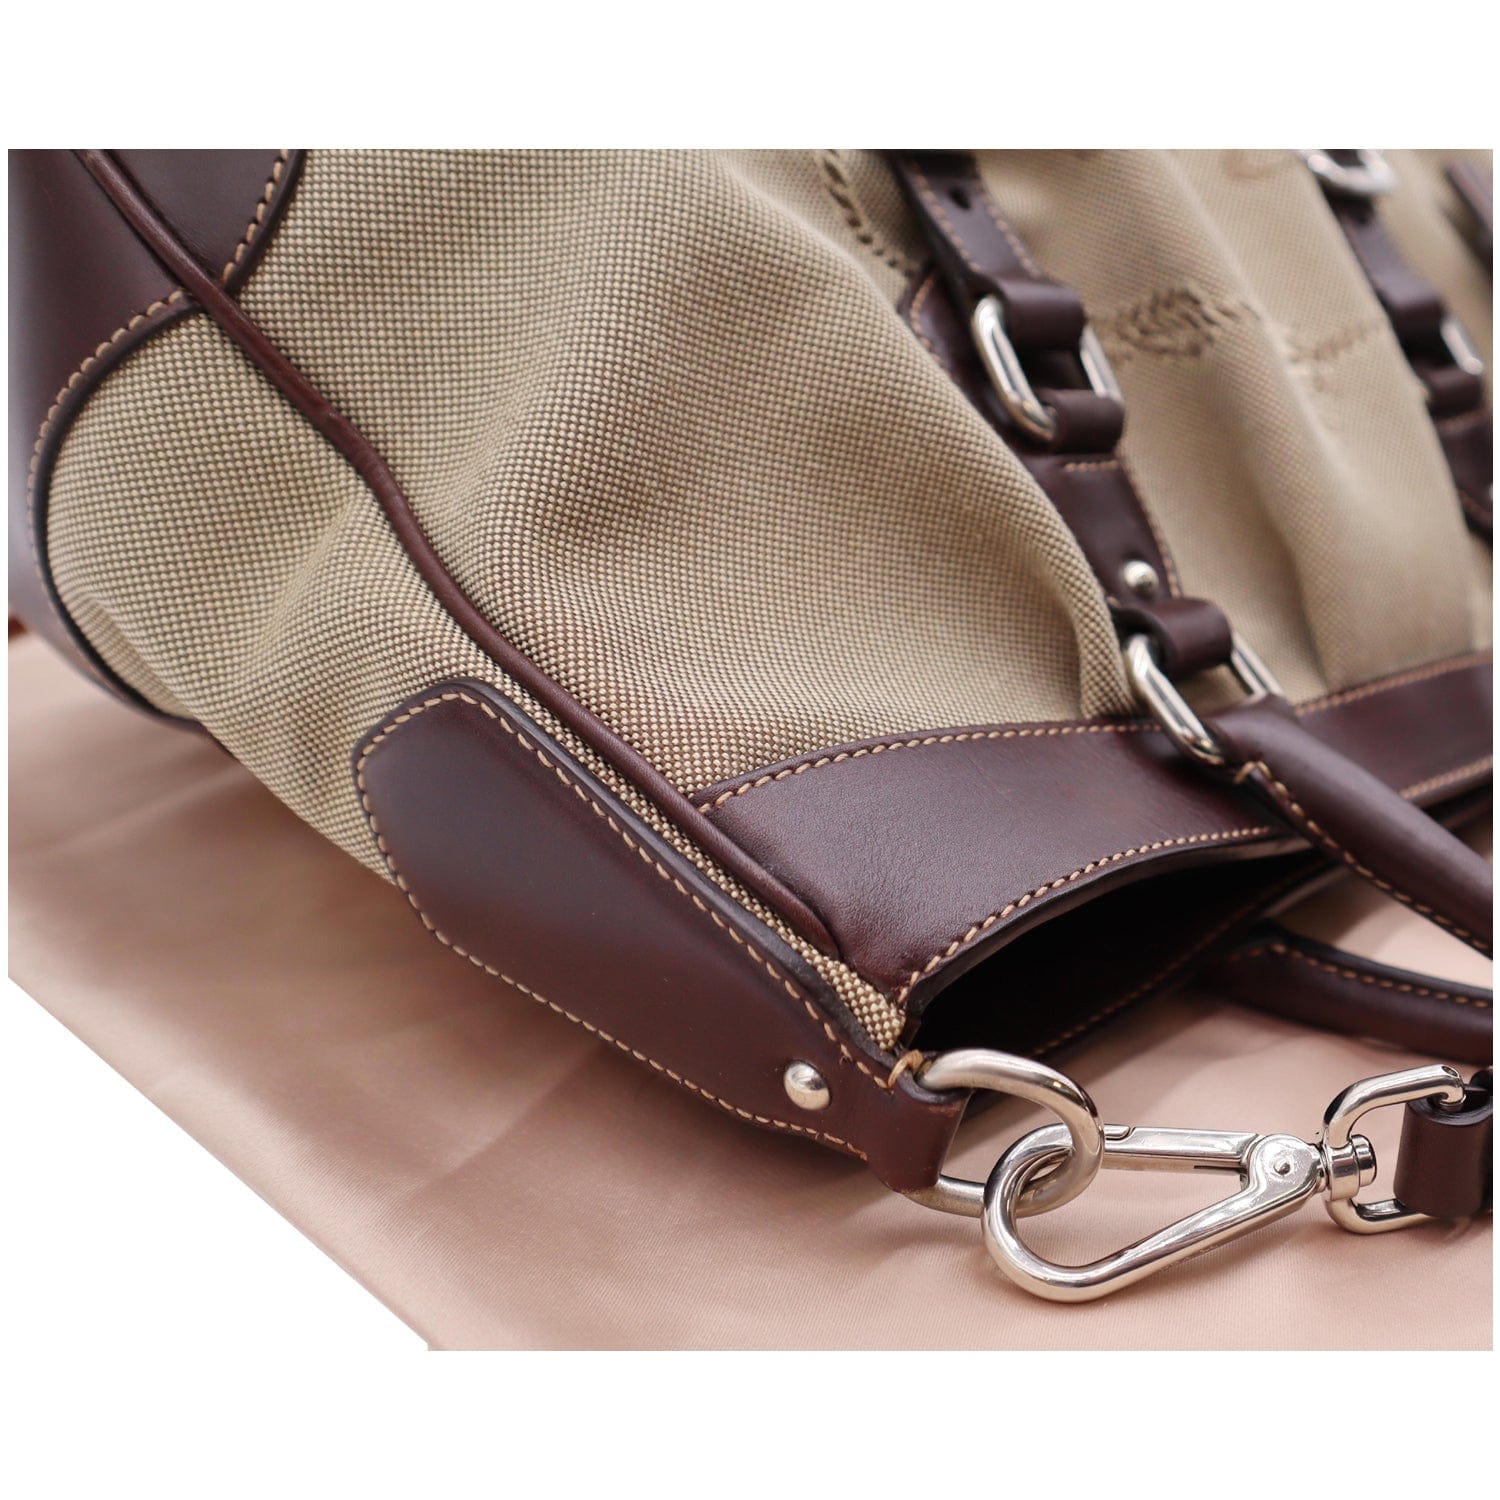 Beige A5 logo-jacquard raffia leather-trim tote bag